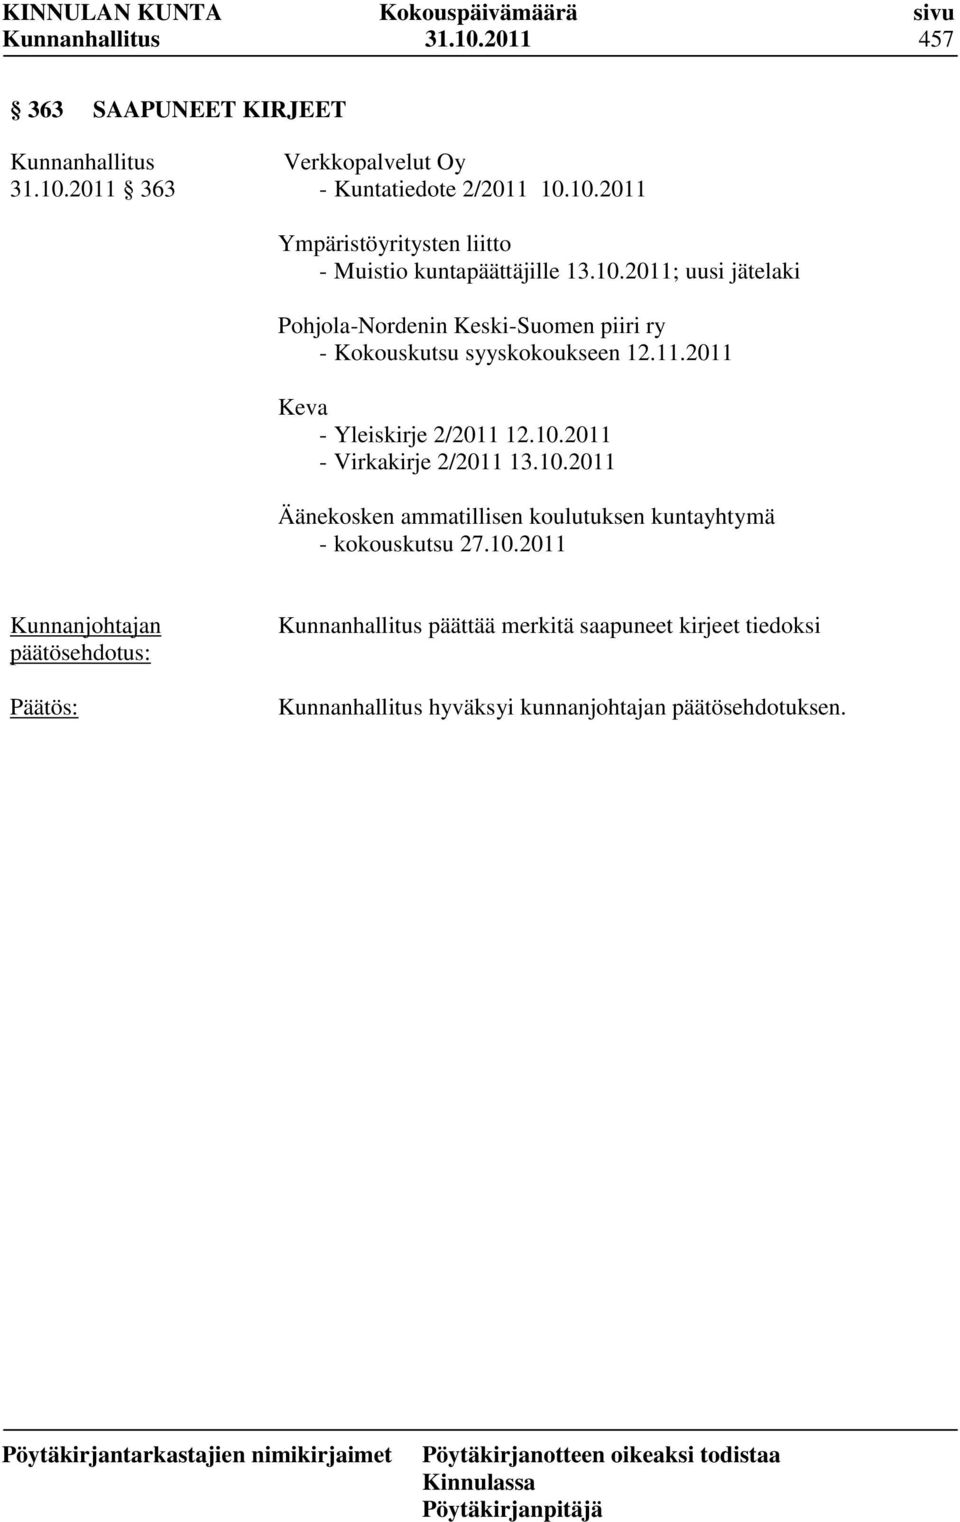 10.2011 - Virkakirje 2/2011 13.10.2011 Äänekosken ammatillisen koulutuksen kuntayhtymä - kokouskutsu 27.10.2011 päättää merkitä saapuneet kirjeet tiedoksi hyväksyi kunnanjohtajan päätösehdotuksen.